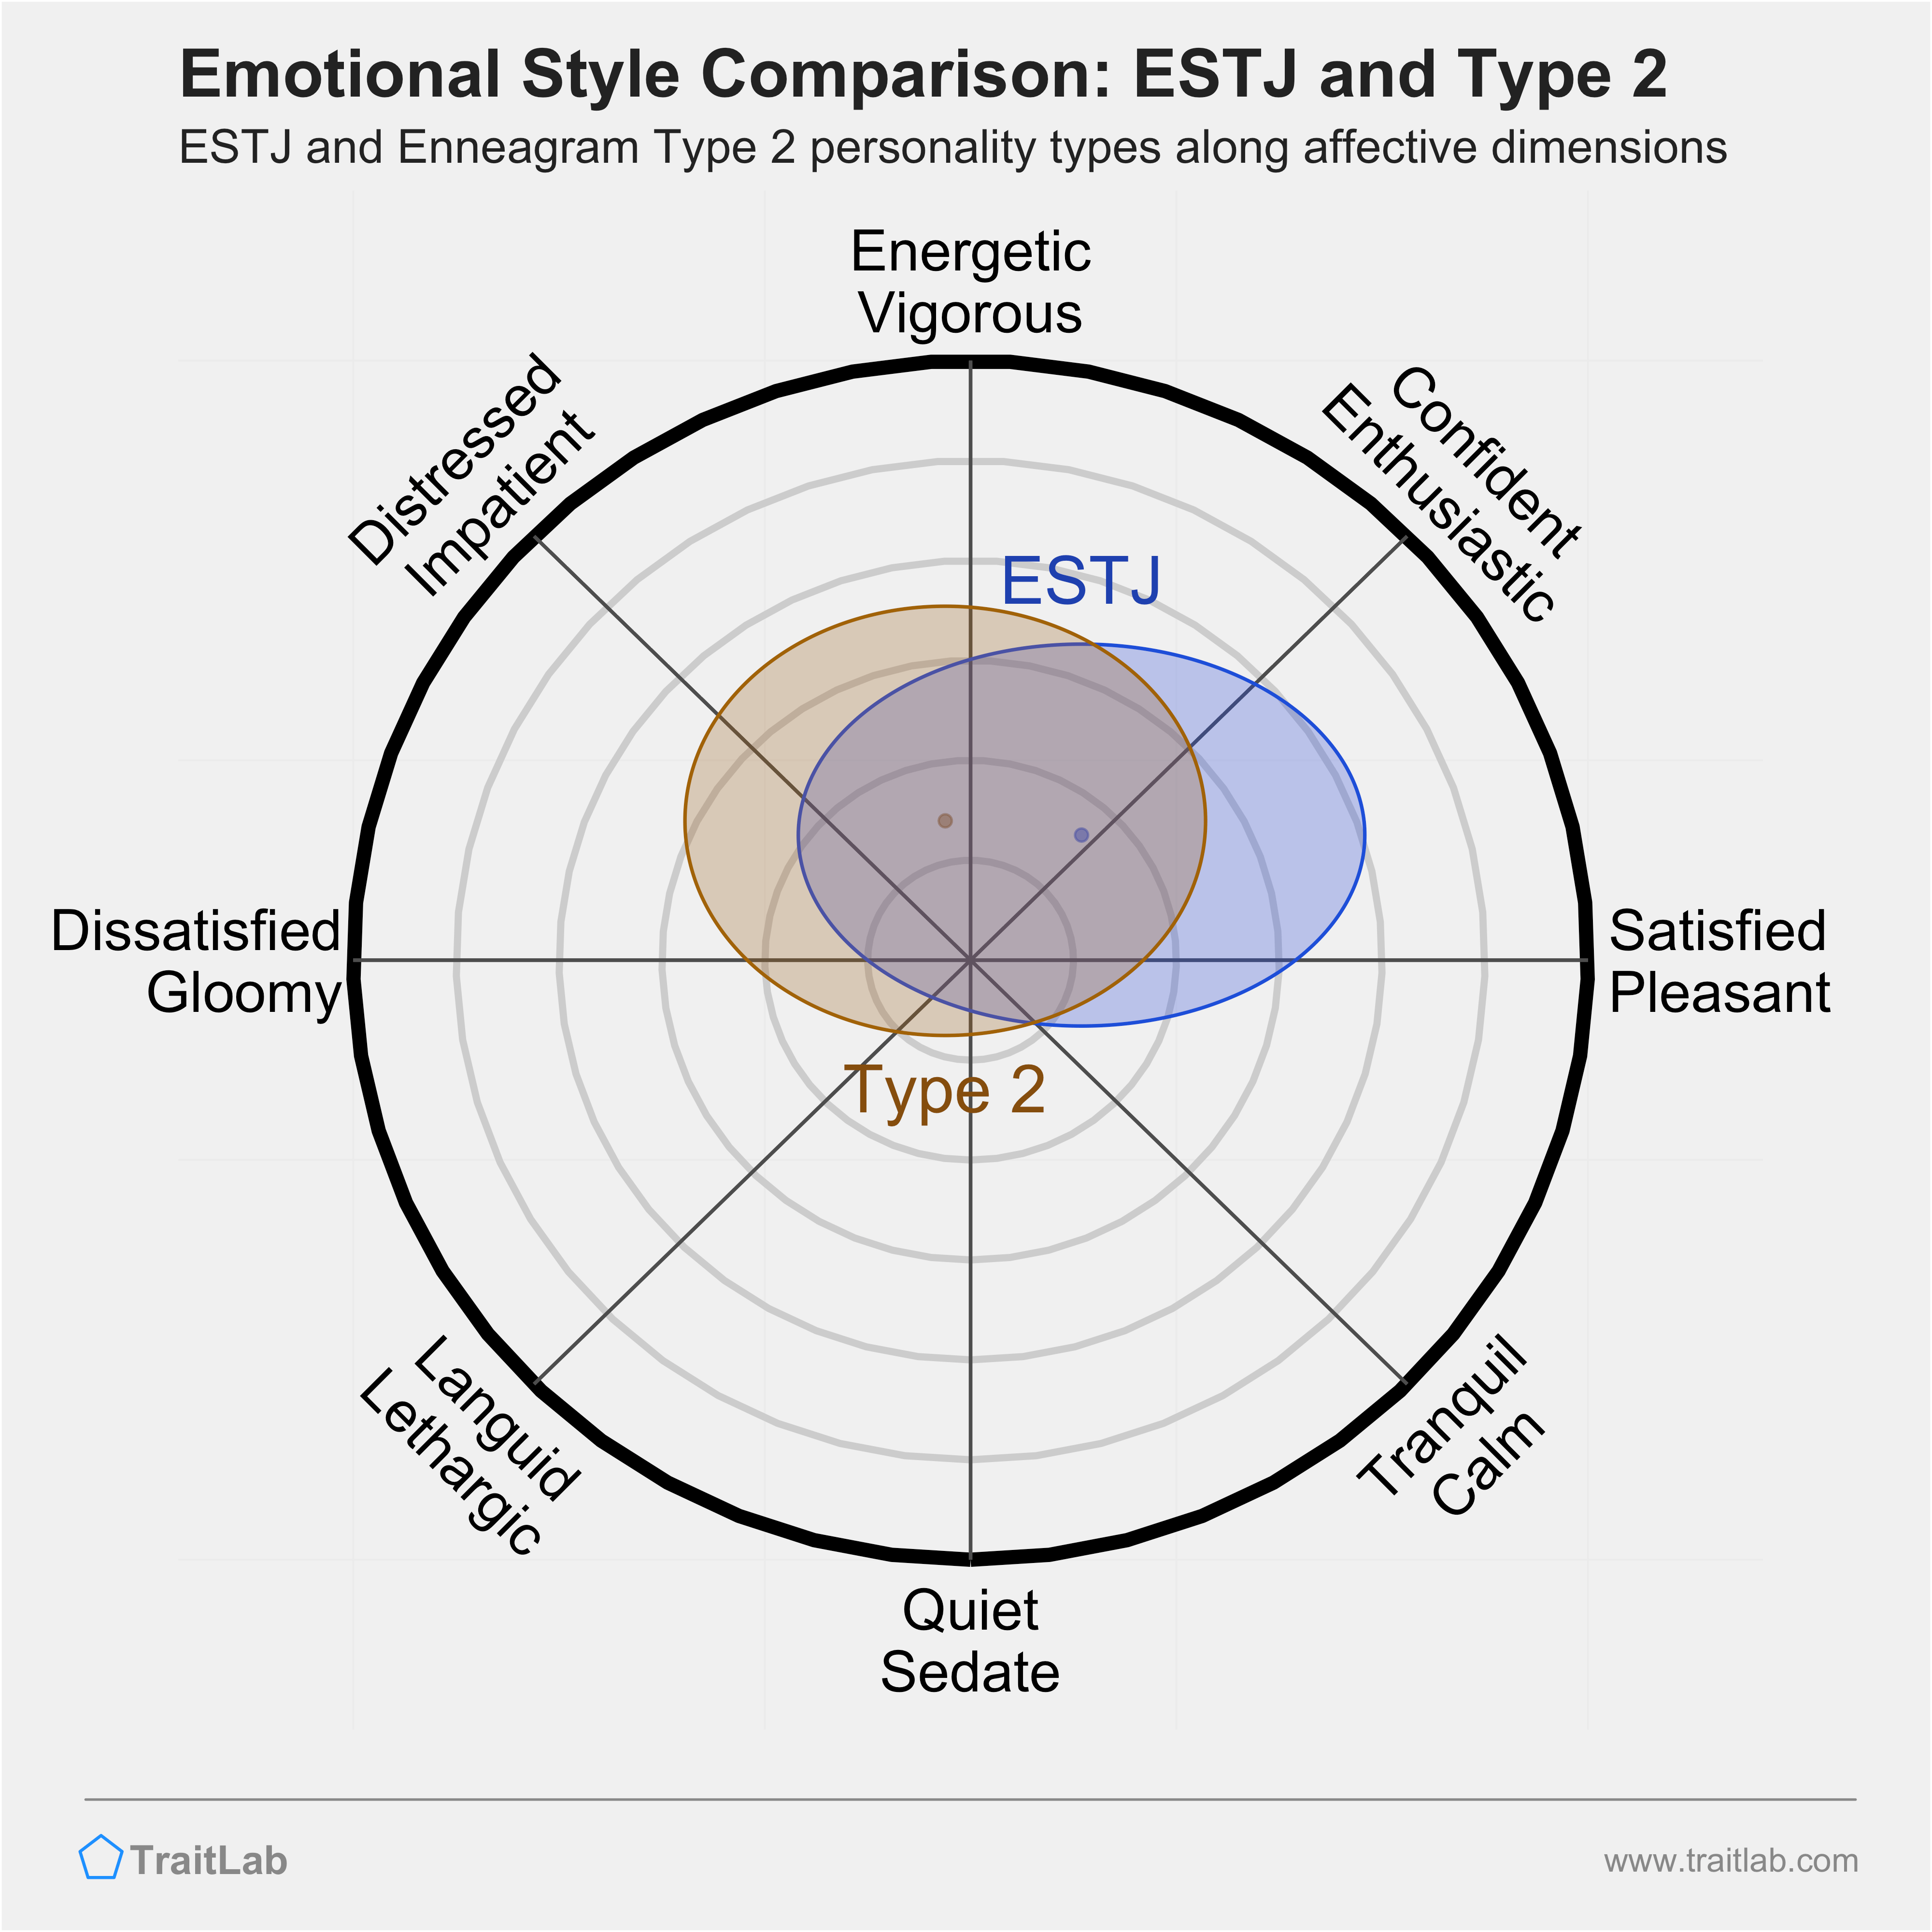 ESTJ and Type 2 comparison across emotional (affective) dimensions